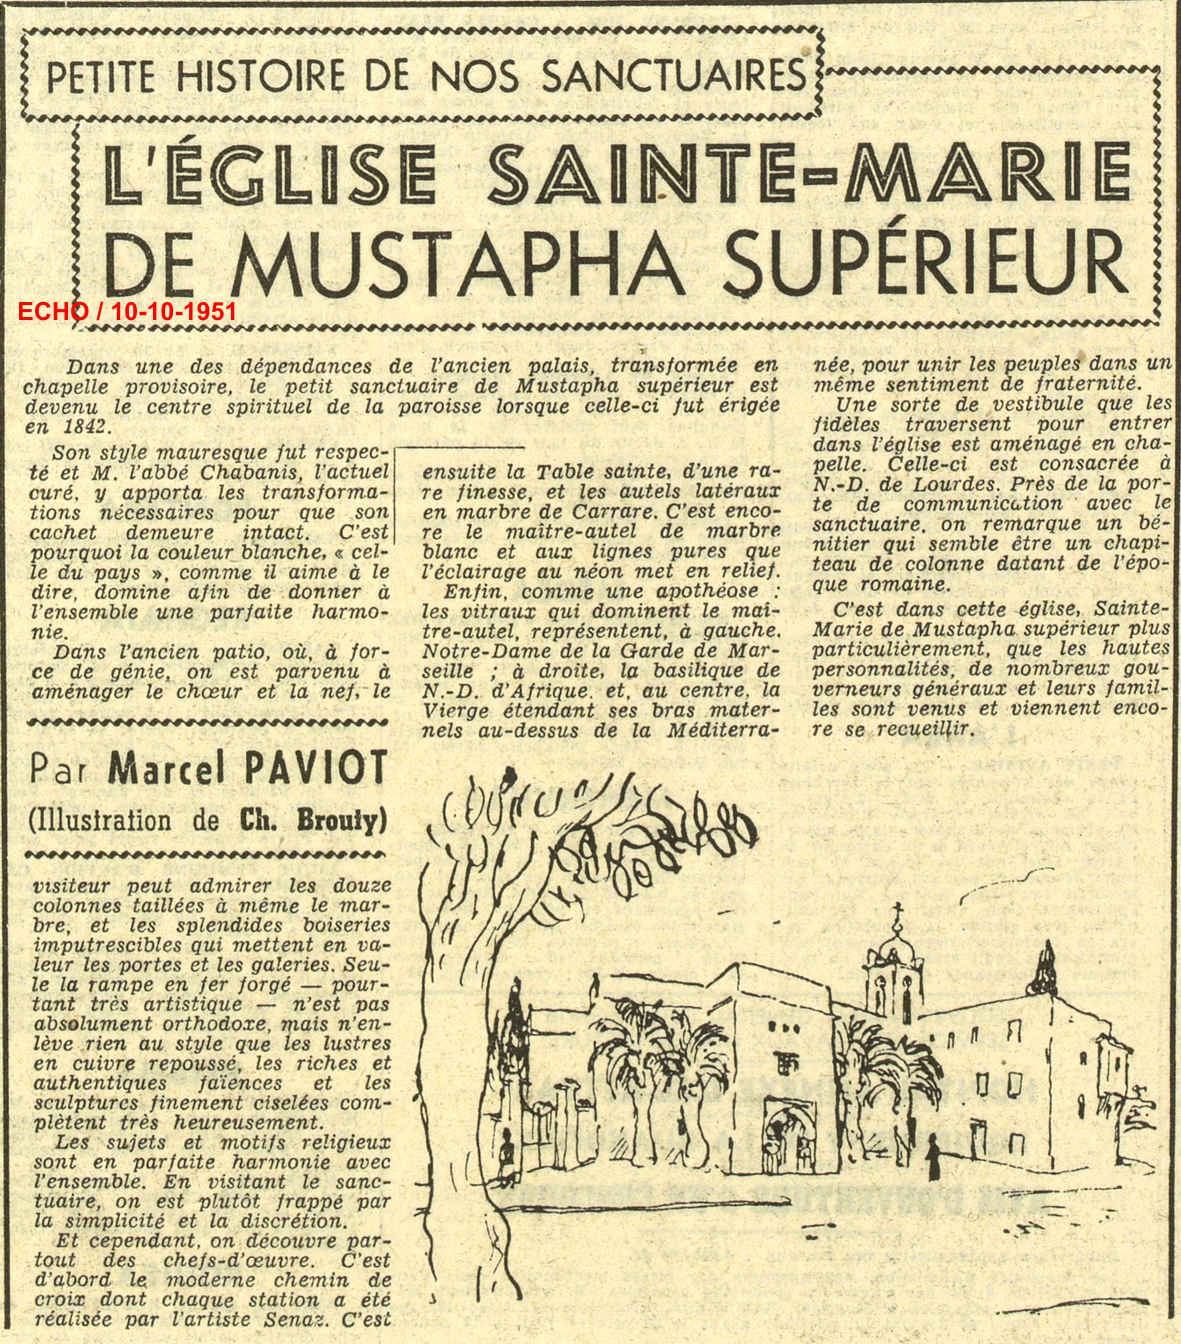 2.- L'ÉGLISE SAINTE-MARIE DE MUSTAPHA SUPÉRIEUR